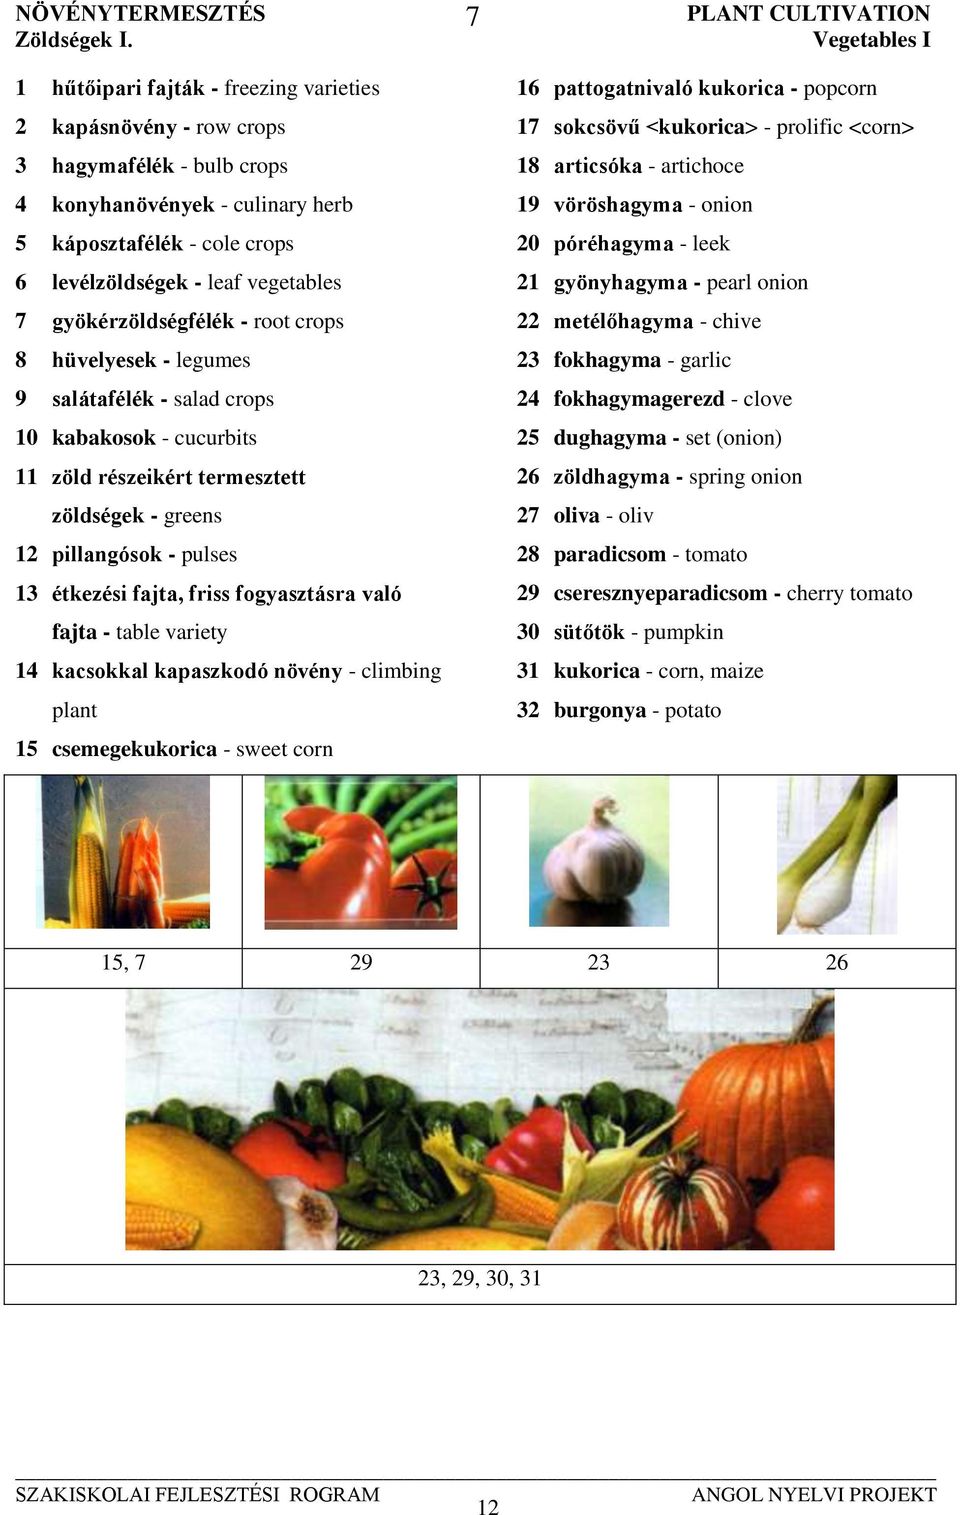 gyökérzöldségfélék - root crops 8 hüvelyesek - legumes 9 salátafélék - salad crops 10 kabakosok - cucurbits 11 zöld részeikért termesztett zöldségek - greens 12 pillangósok - pulses 13 étkezési